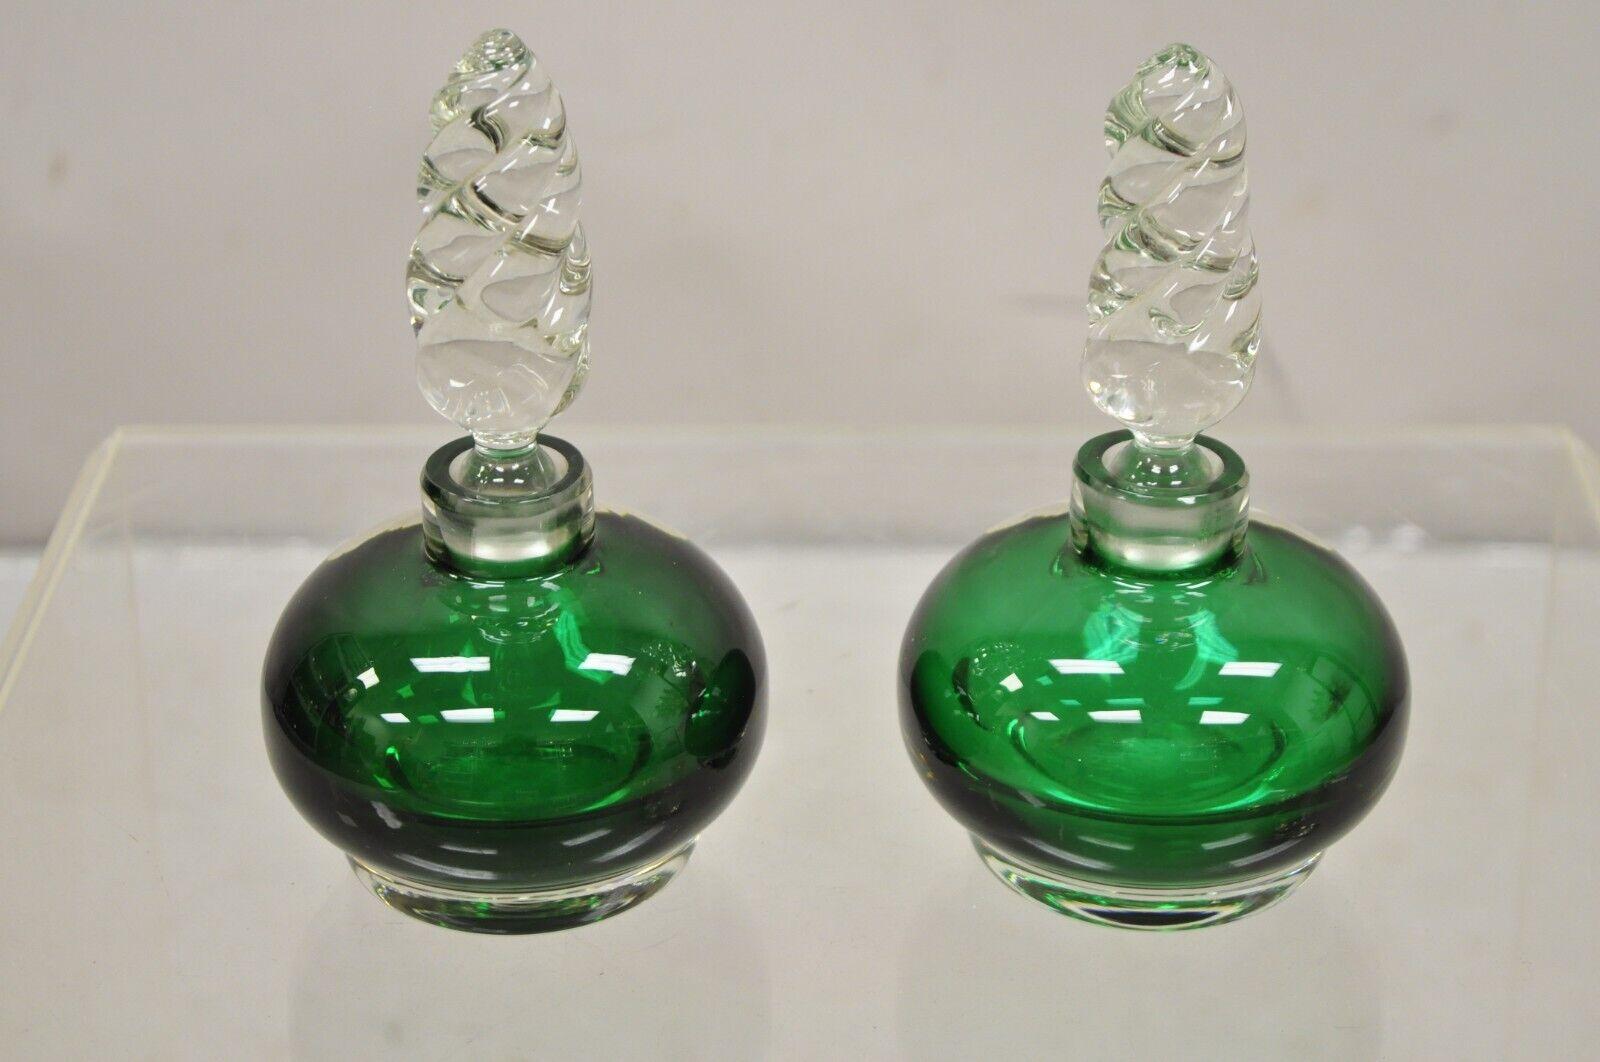 Große Vintage Smaragdgrün geblasen Glas Spirale Stopper bayerischen Parfümflasche - ein Paar. Circa Mitte des 20. Jahrhunderts. Abmessungen: 7